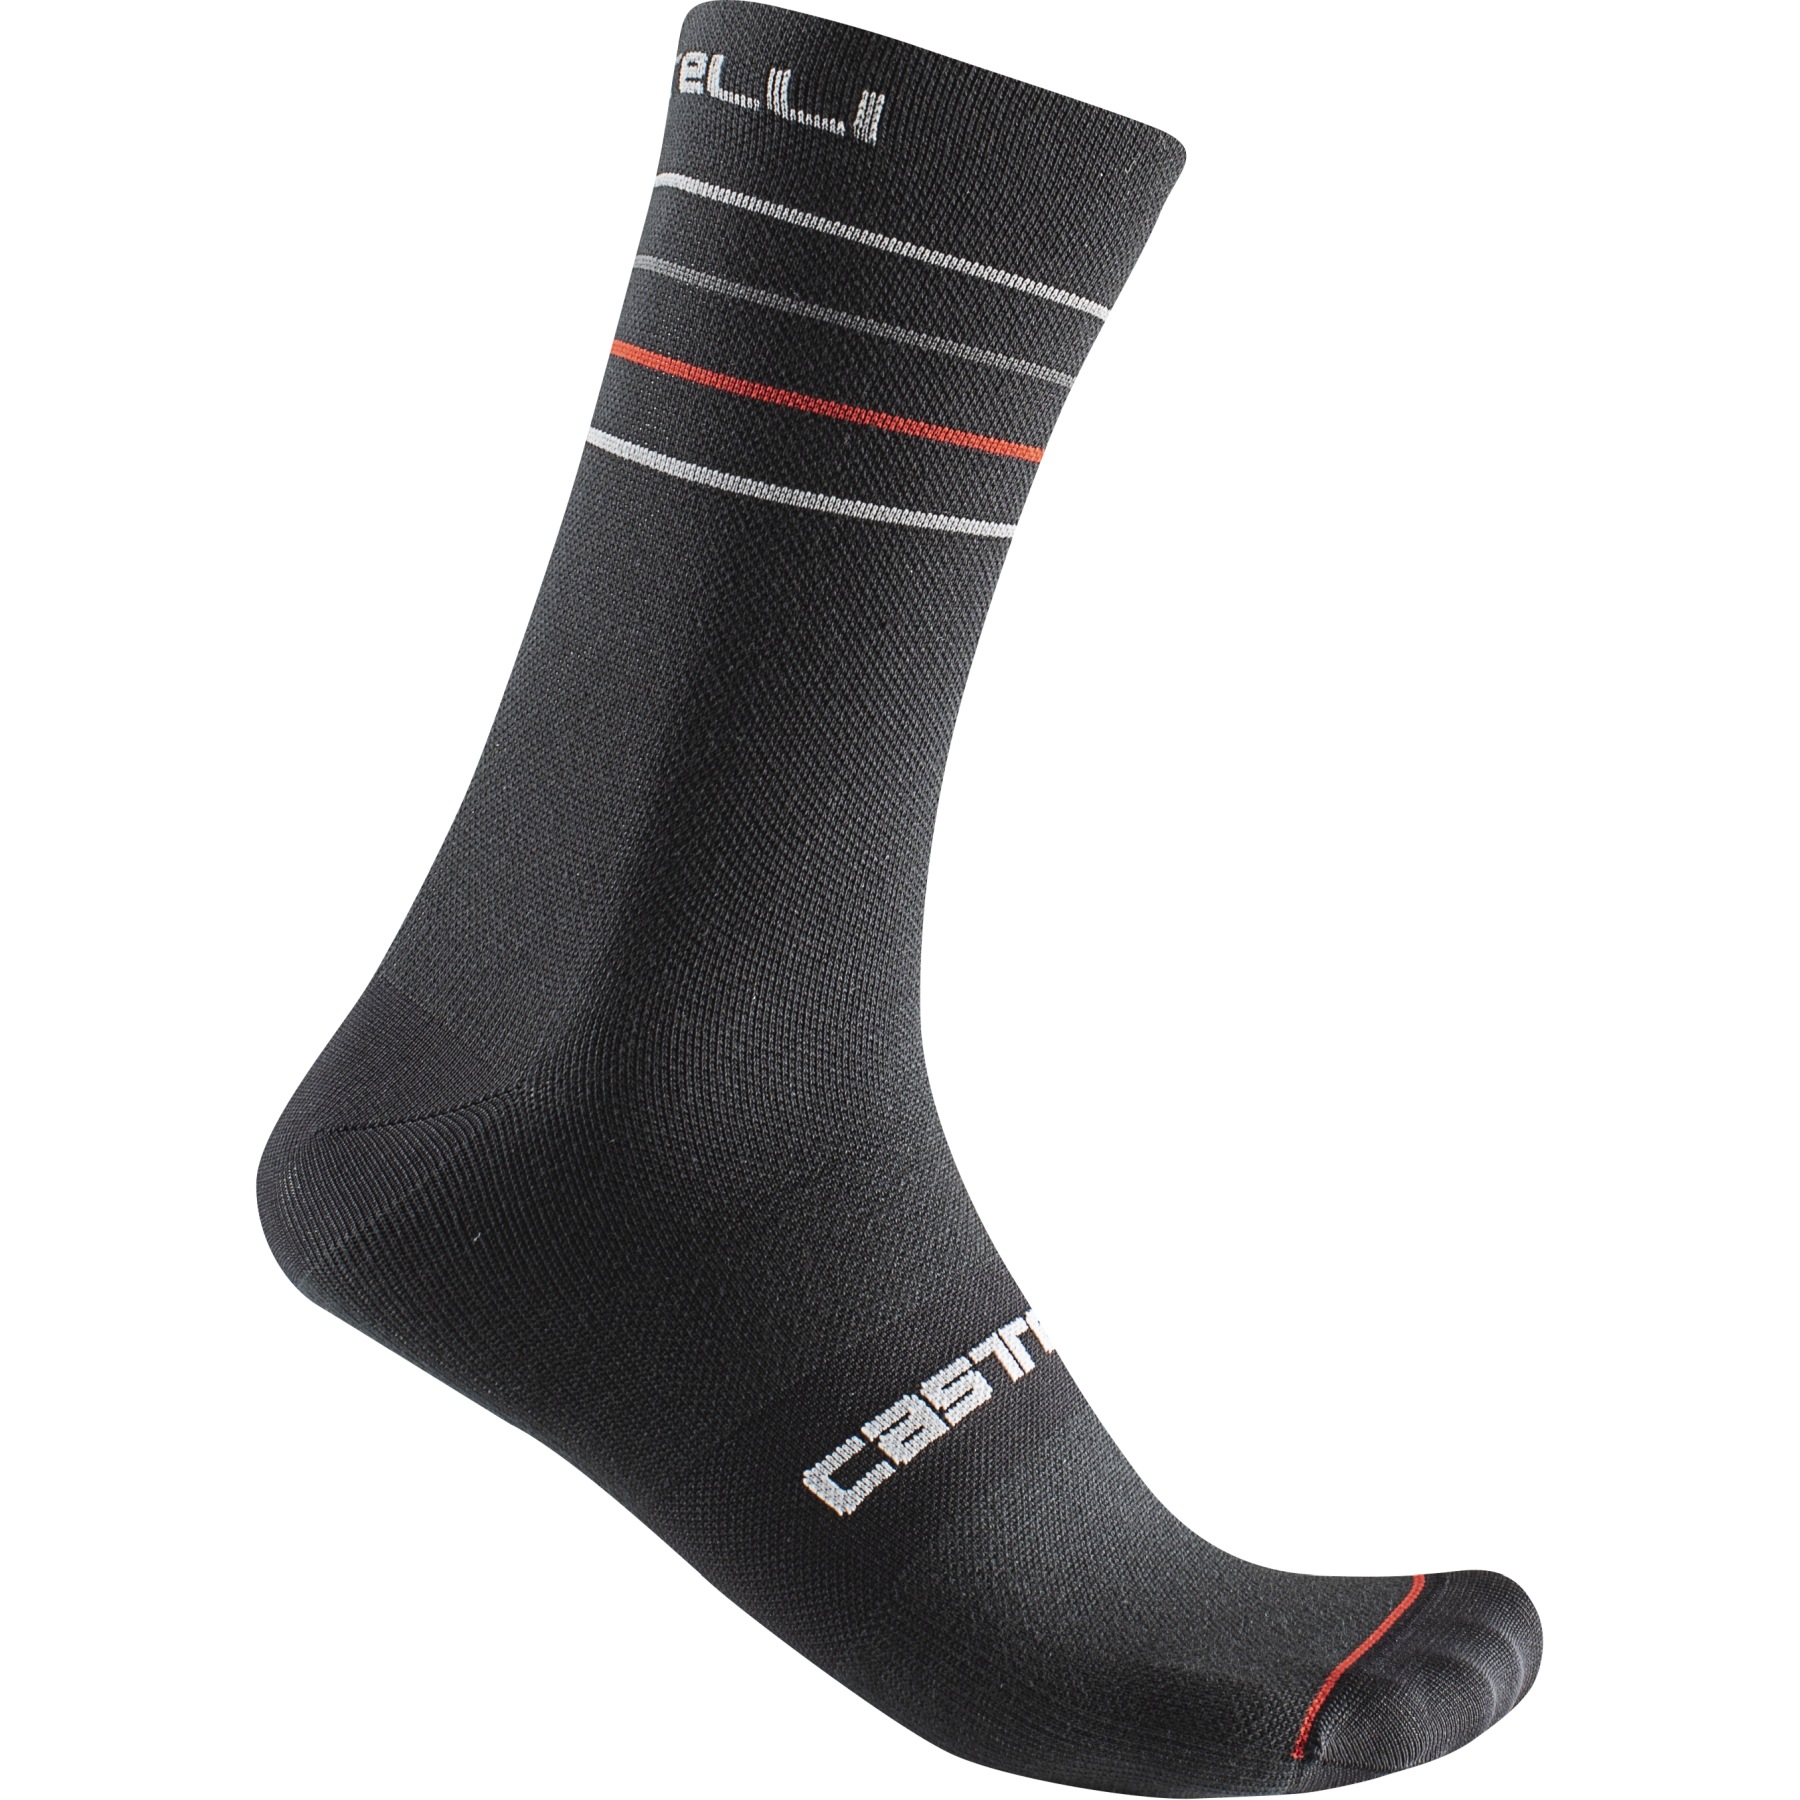 Bild von Castelli Endurance 15 Socken - black/silver grey-red 010